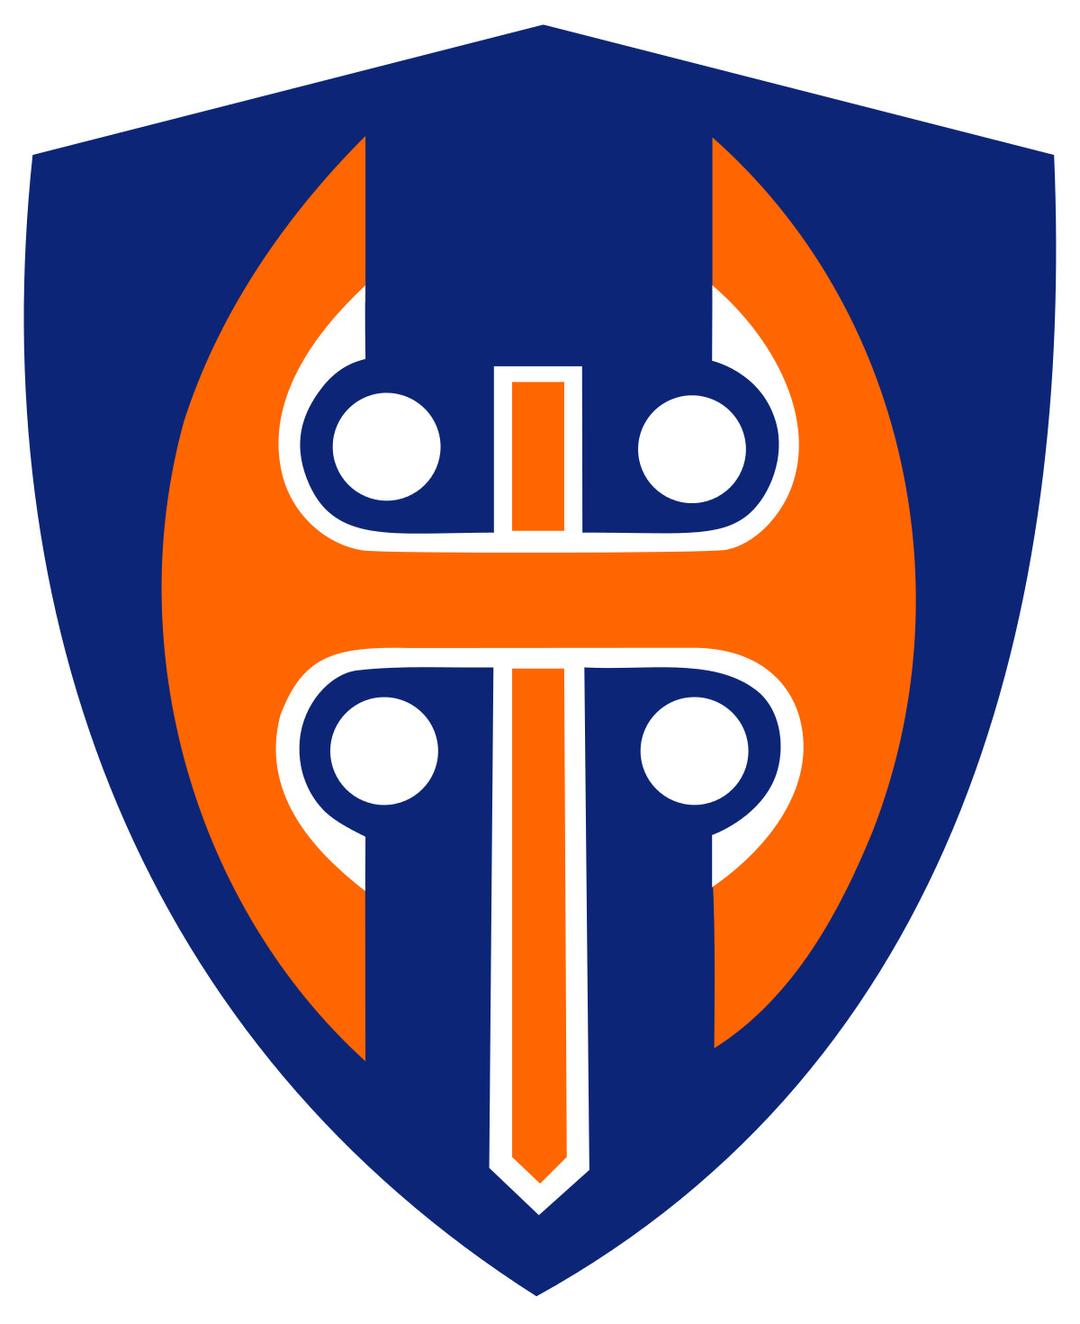 Tappara Tampere Logo png transparent